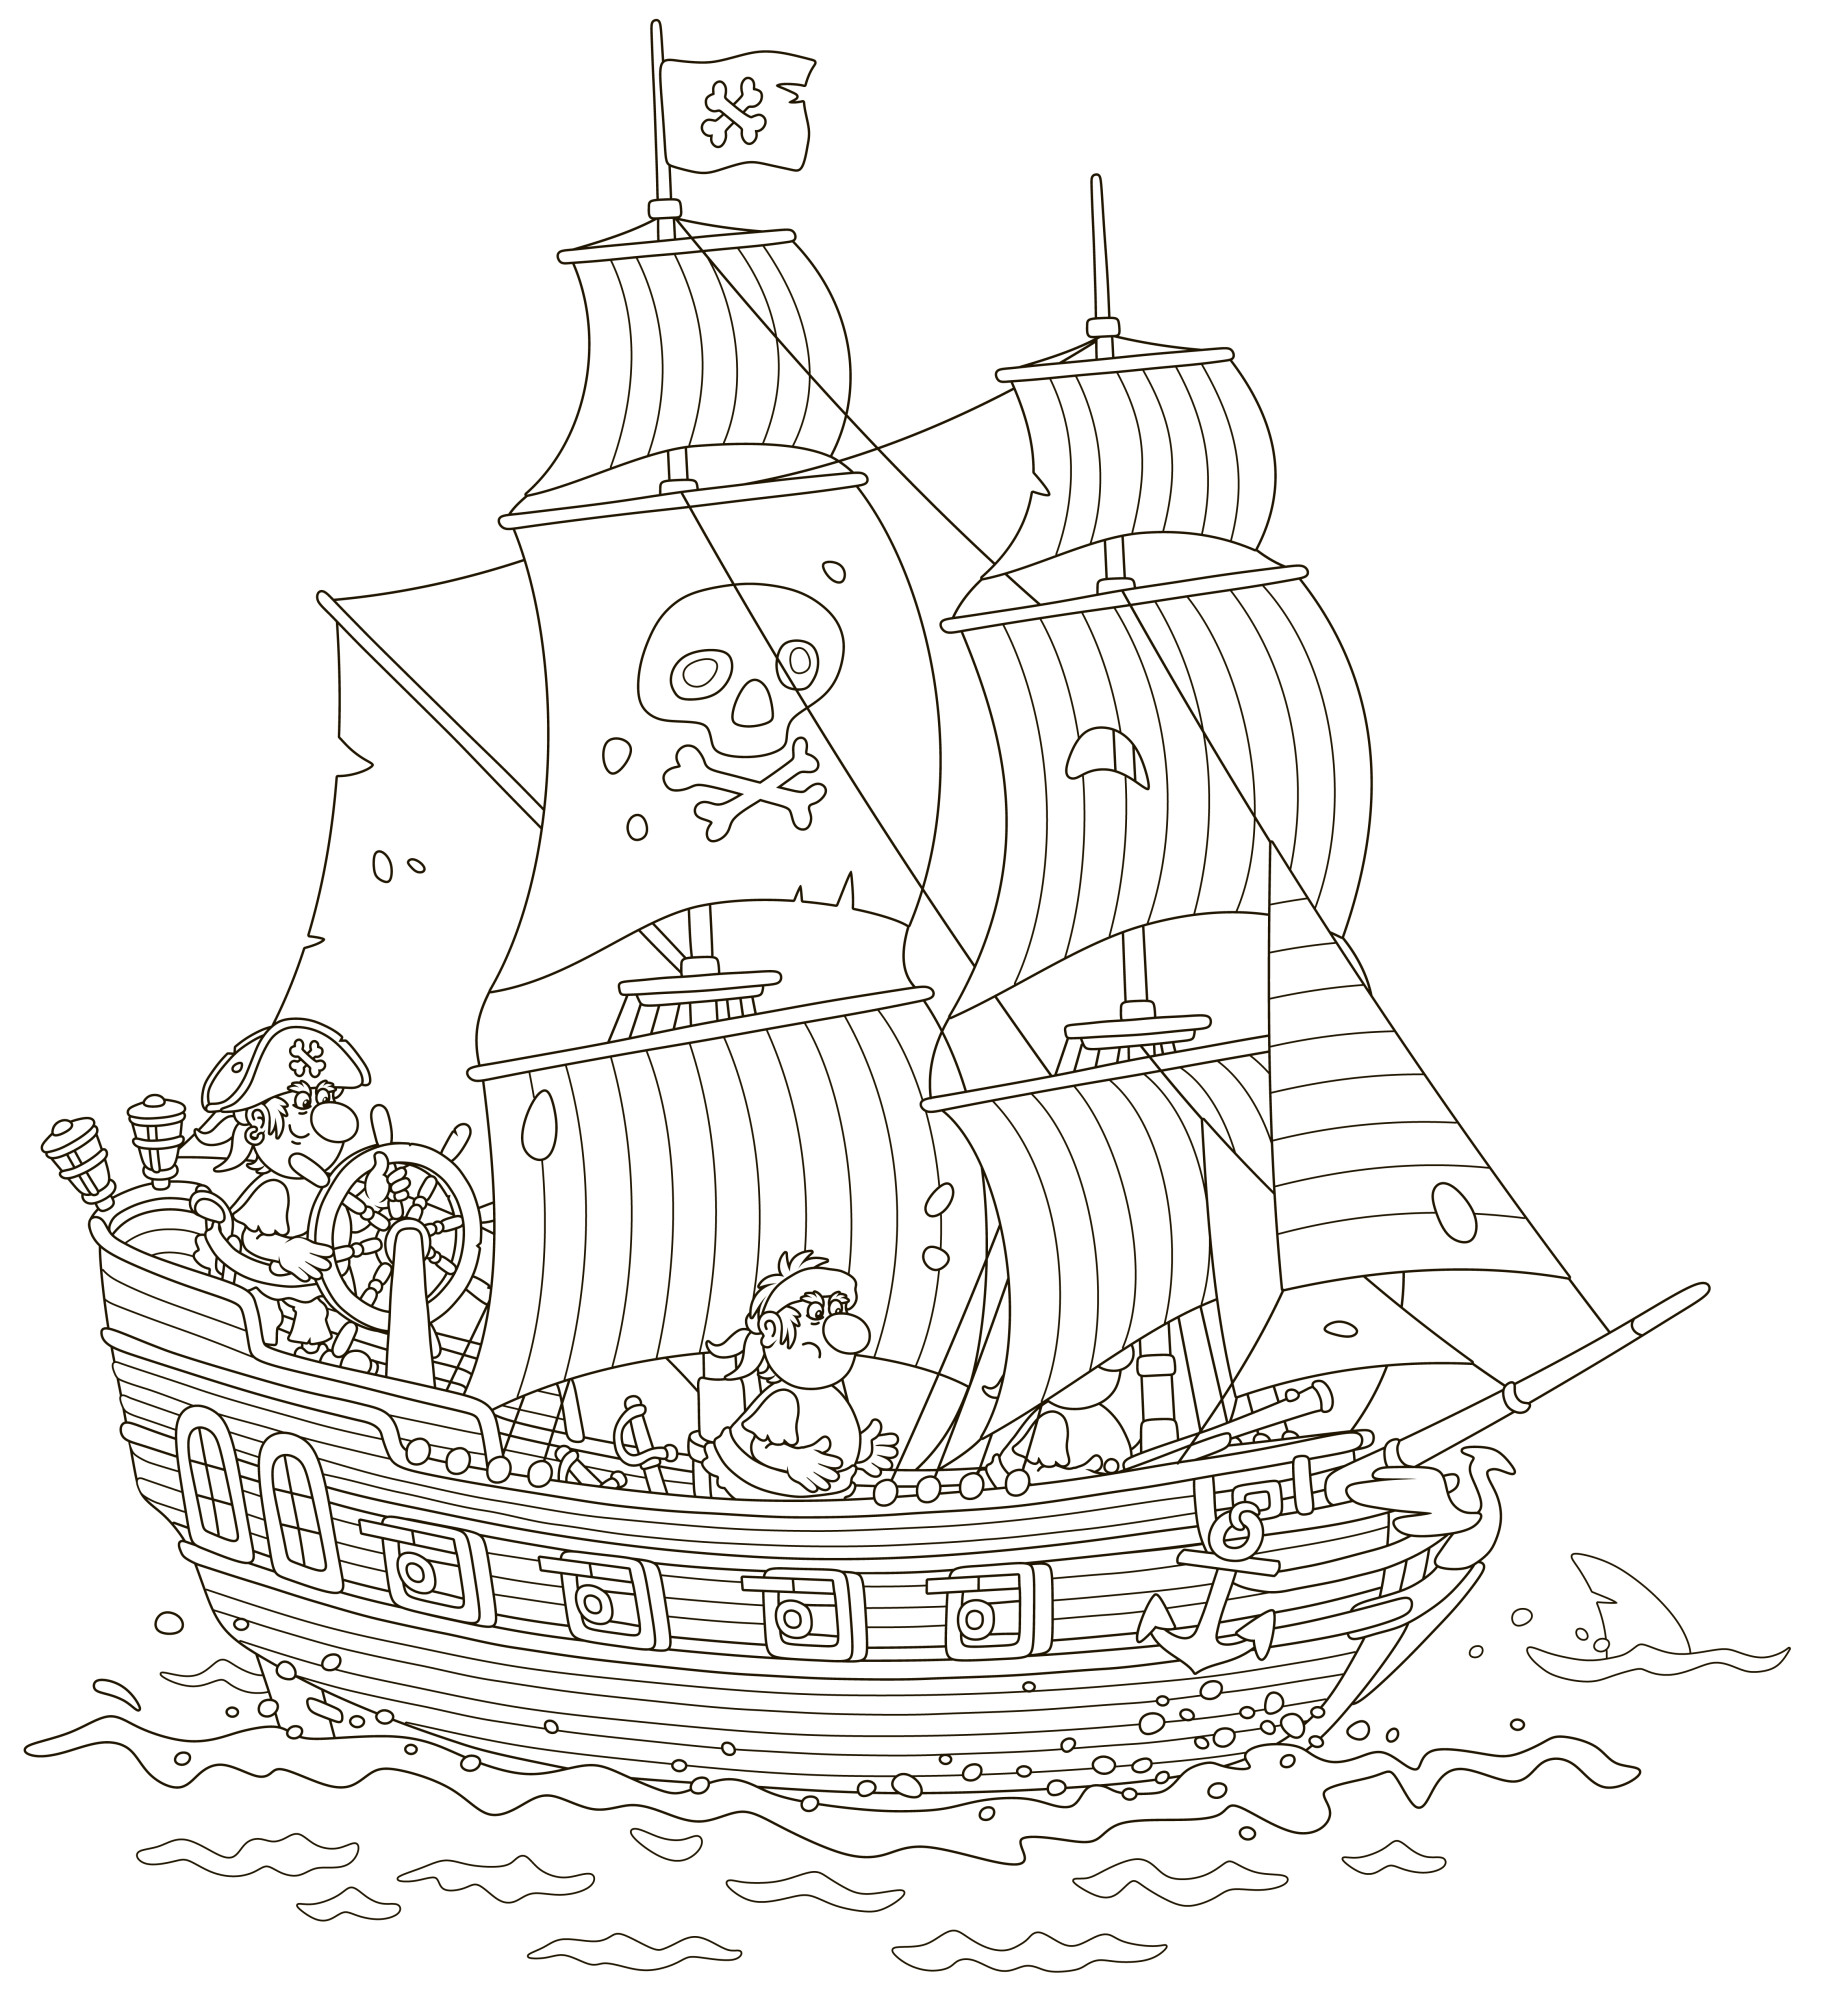 Раскраска для детей: большой пиратский корабль с пушками и флагом